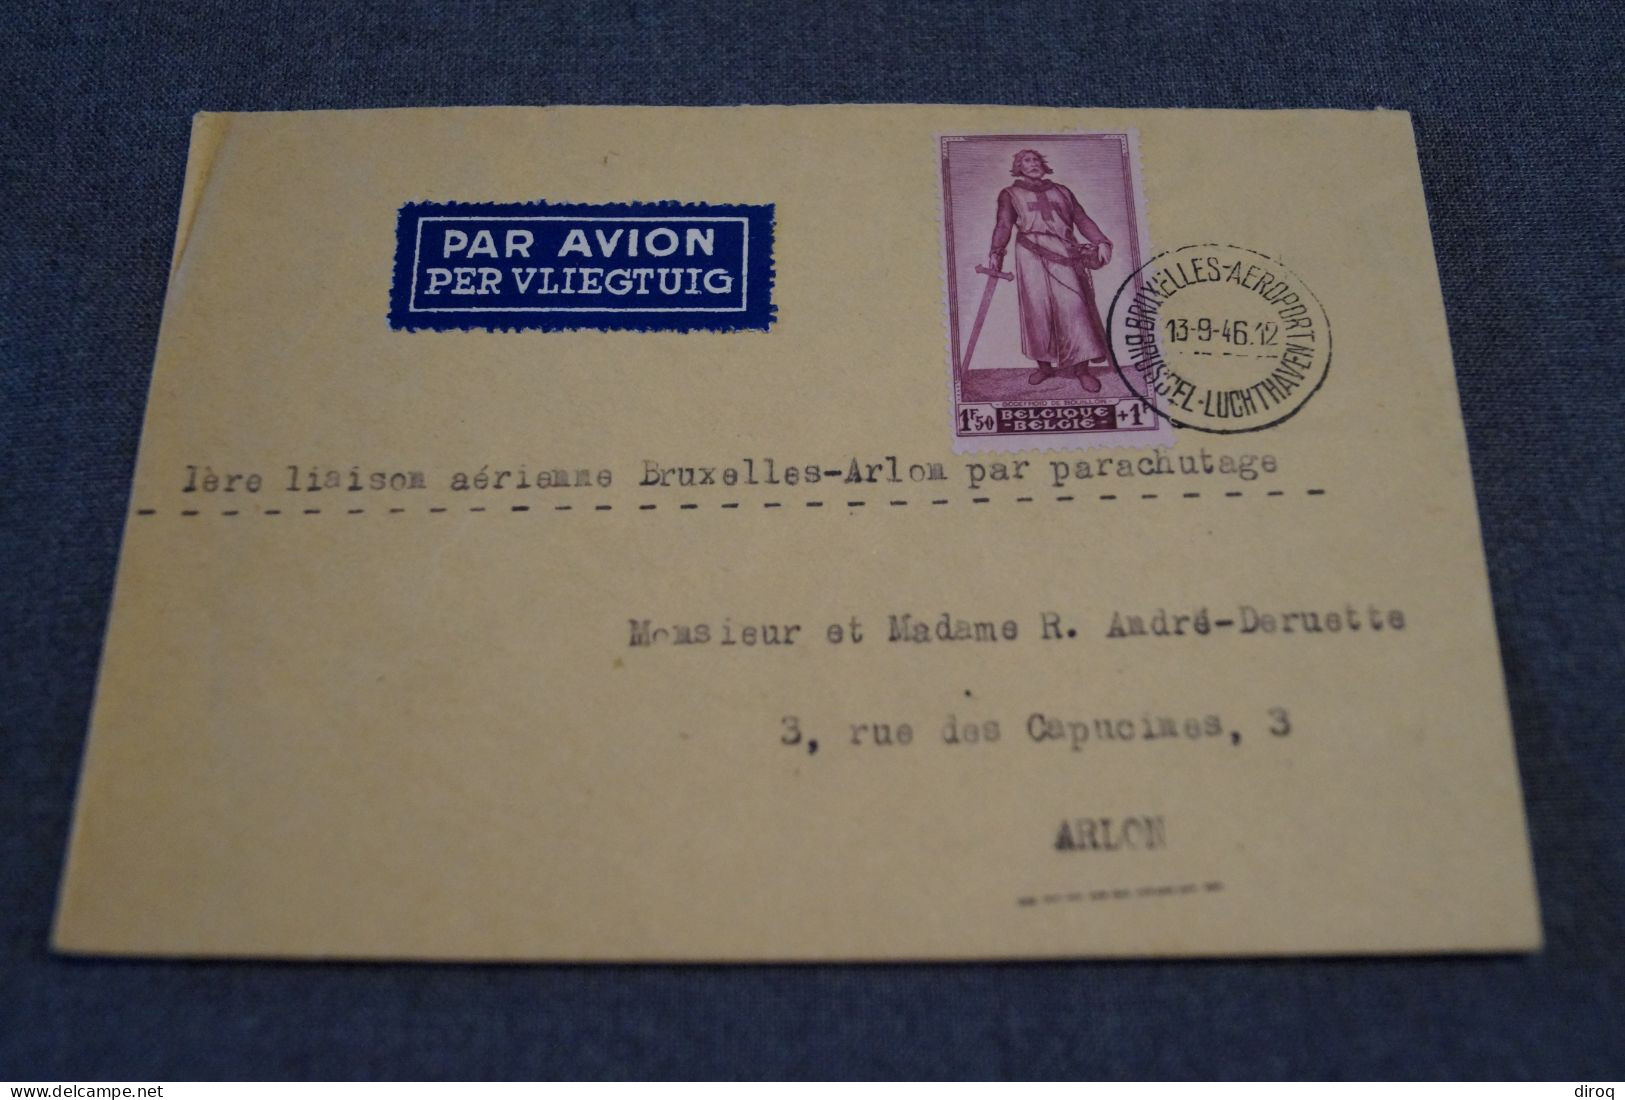 Superbe Envoi Par Parachutage,1946,Bruxelles - Arlon, Pour Collection - Covers & Documents